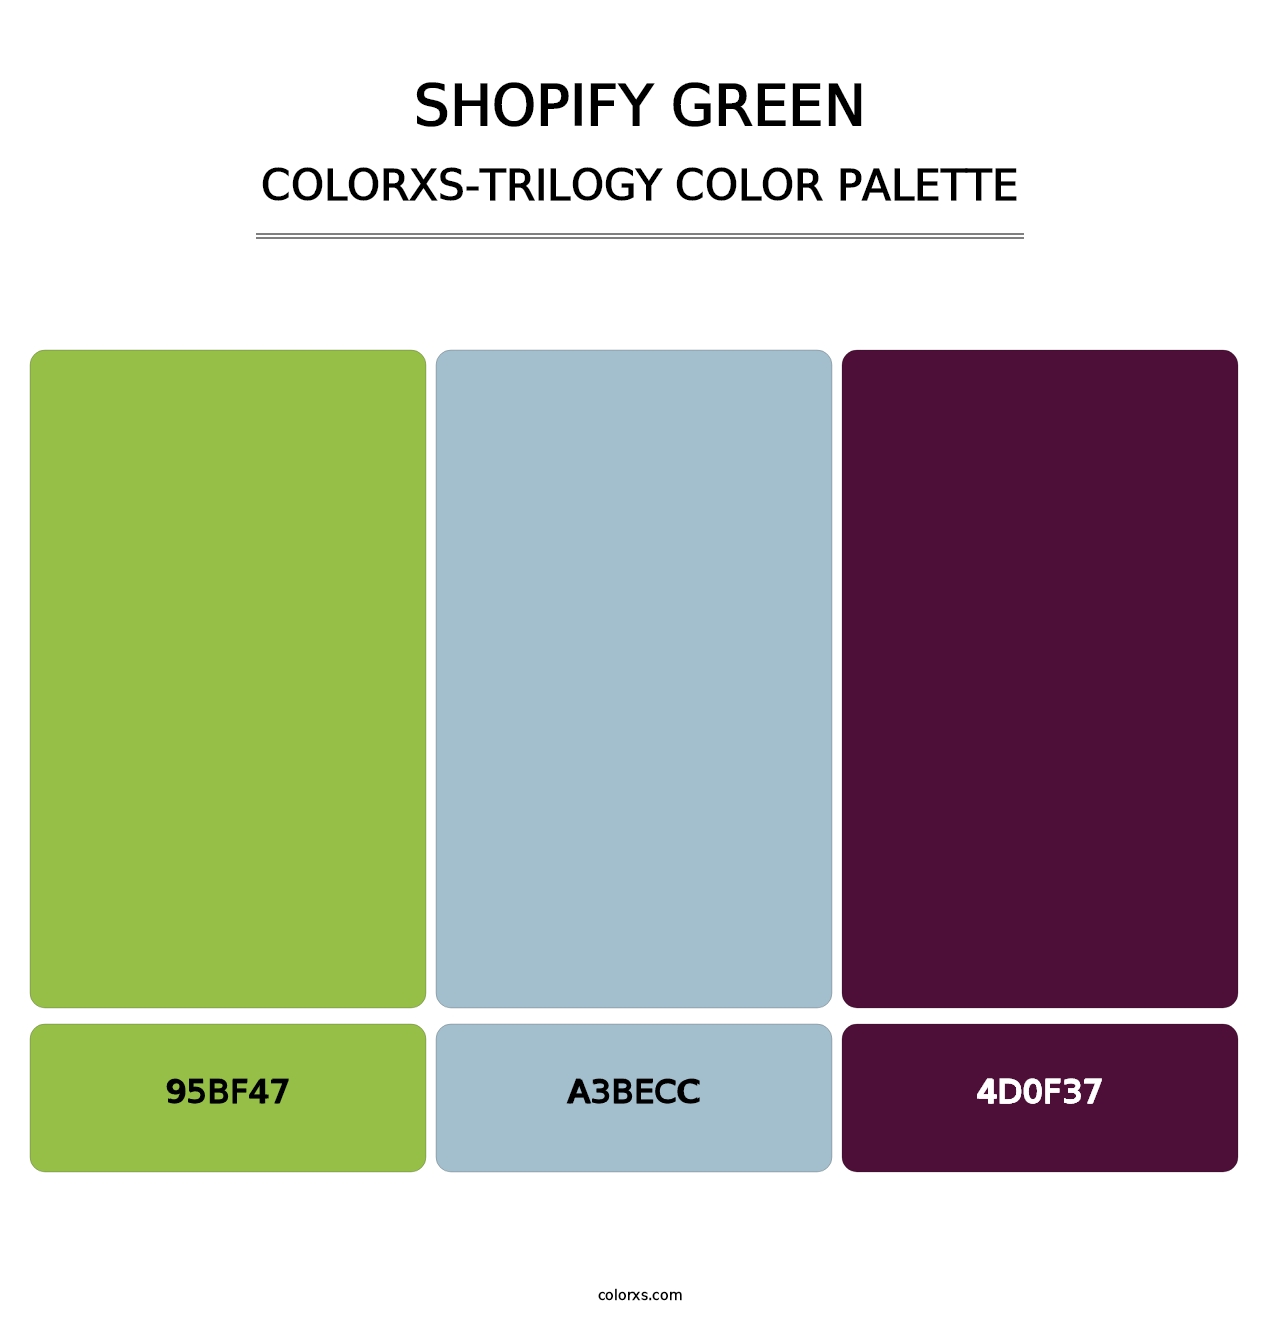 Shopify Green - Colorxs Trilogy Palette